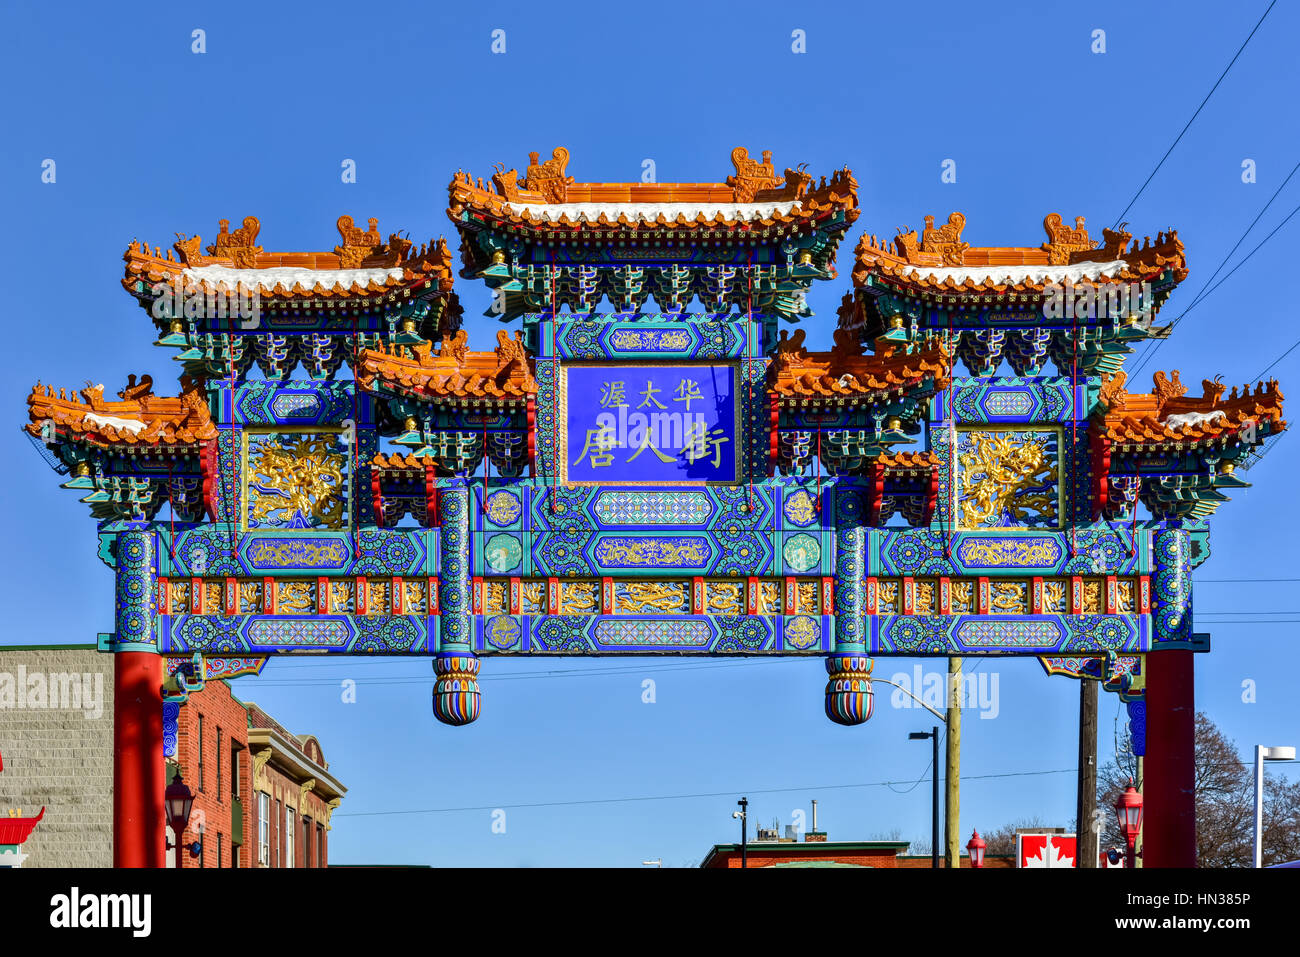 El real arco imperial en Ottawa, Canadá. Marca la entrada de la zona de Chinatown en Ottawa. Rica en simbolismo, en el centro del panel azul en el arco Foto de stock